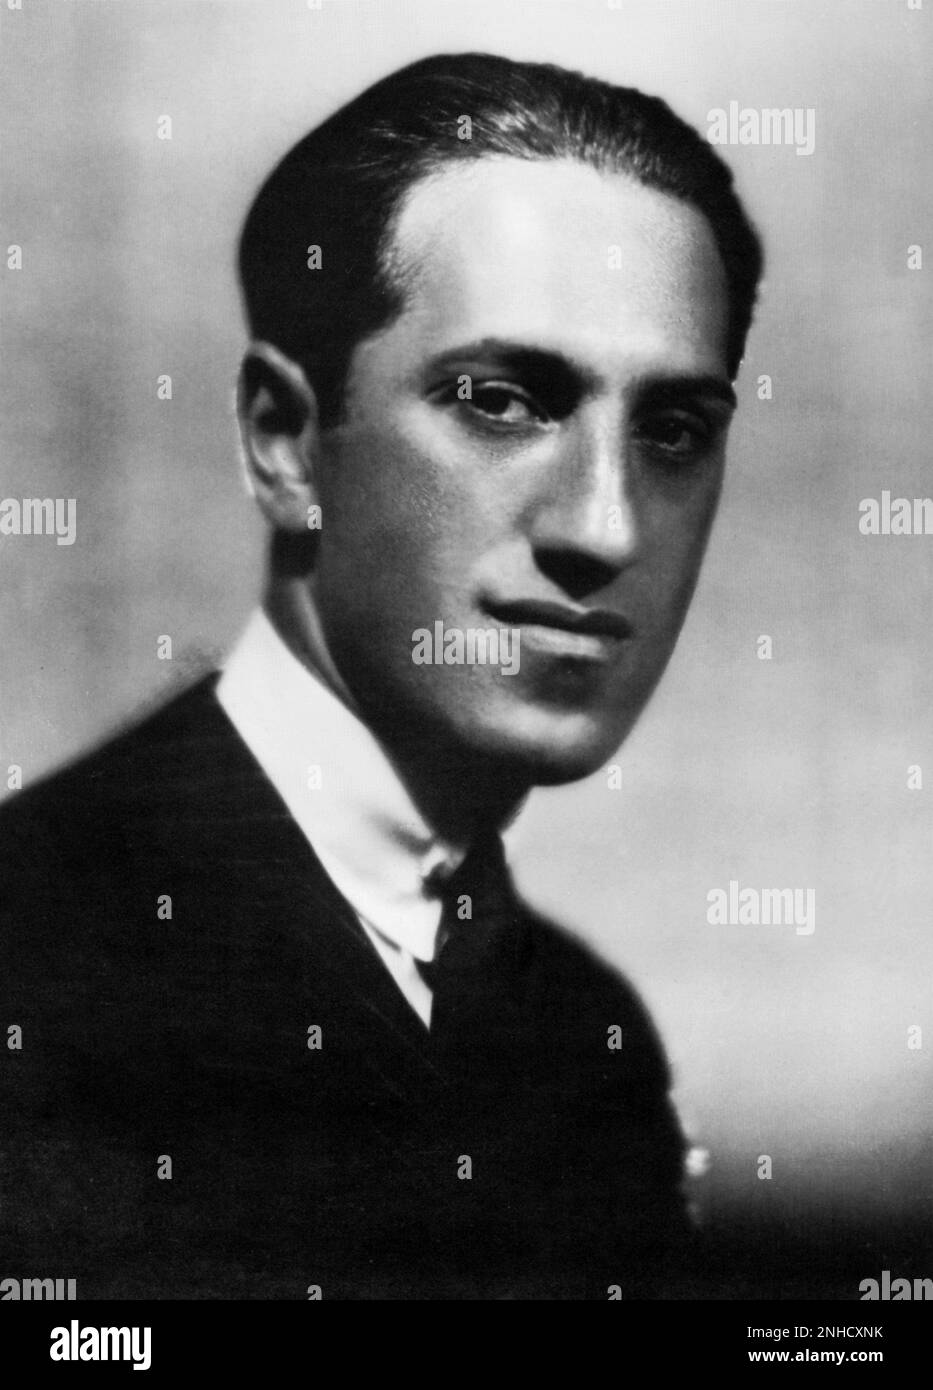 1920, USA : il pianista e compositore americano GEORGE GERSHWIN ( 1898 - 1937 ) - COMPOSITORE - MUSICALE - MUSICA JAZZ - CLASSICA - classica - colletto - colletto ---- Archivio GBB Foto Stock